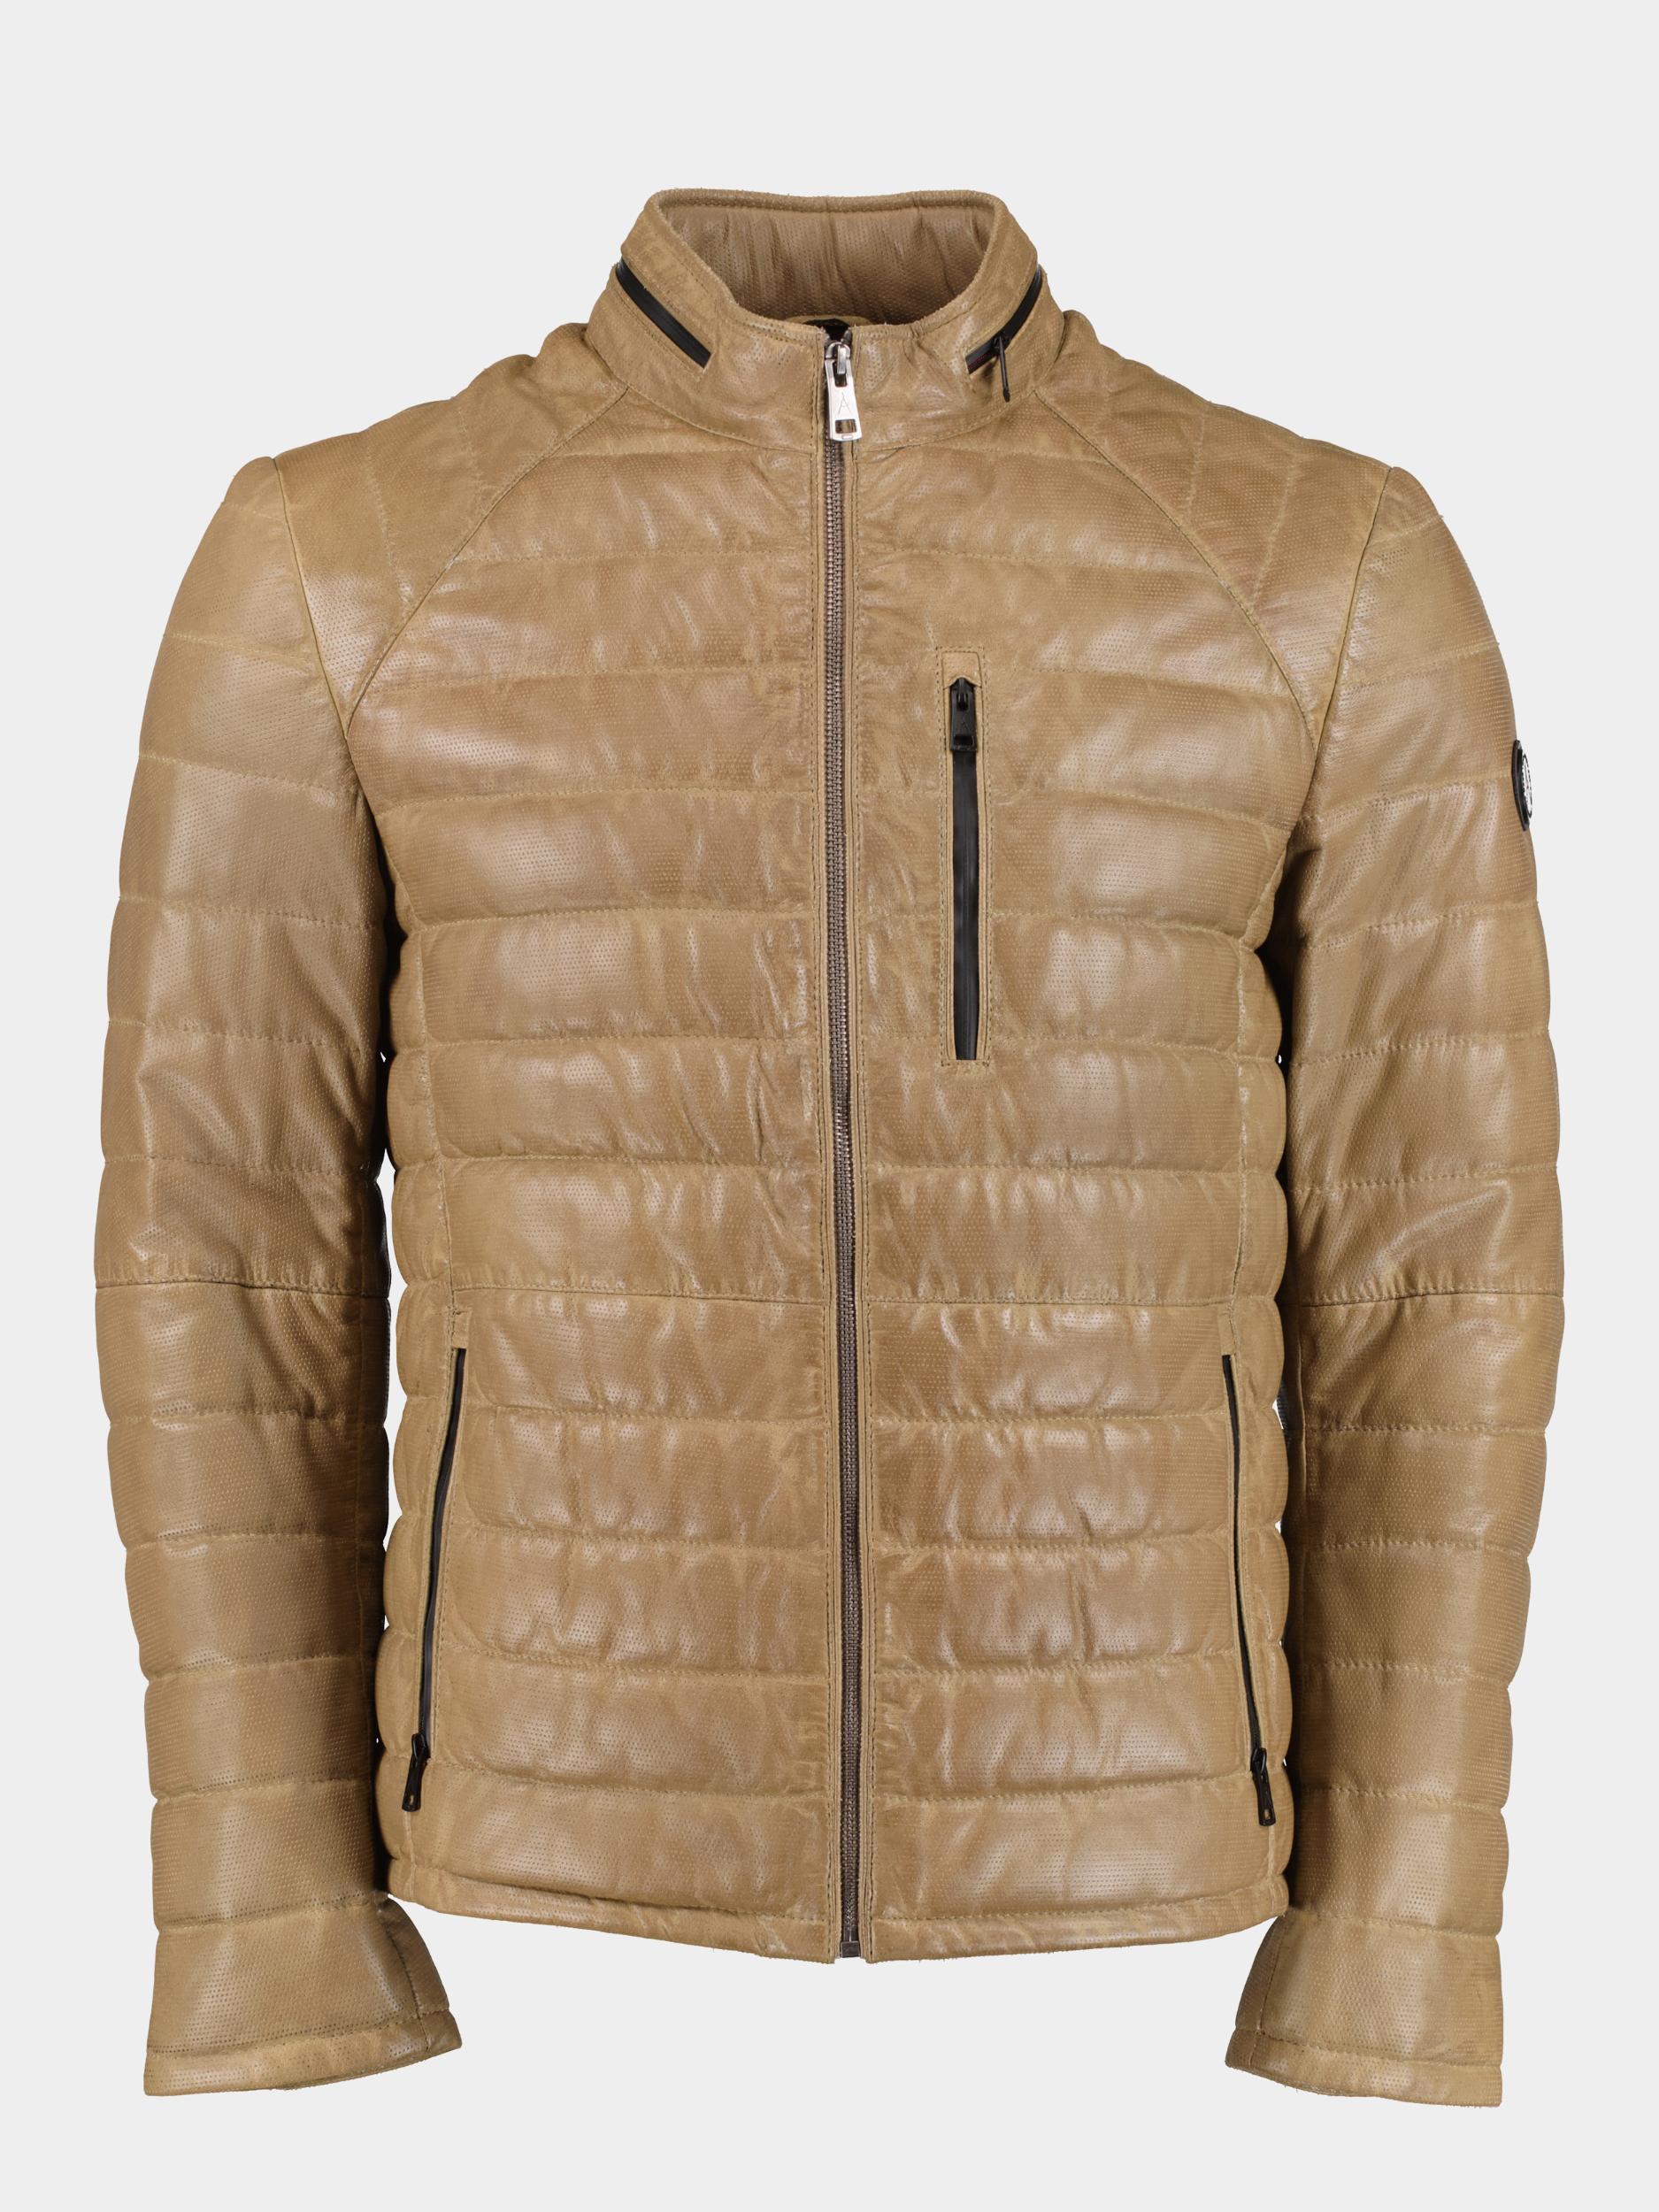 Donders 1860 Lederen jack Groen Leather Jacket 52290/623